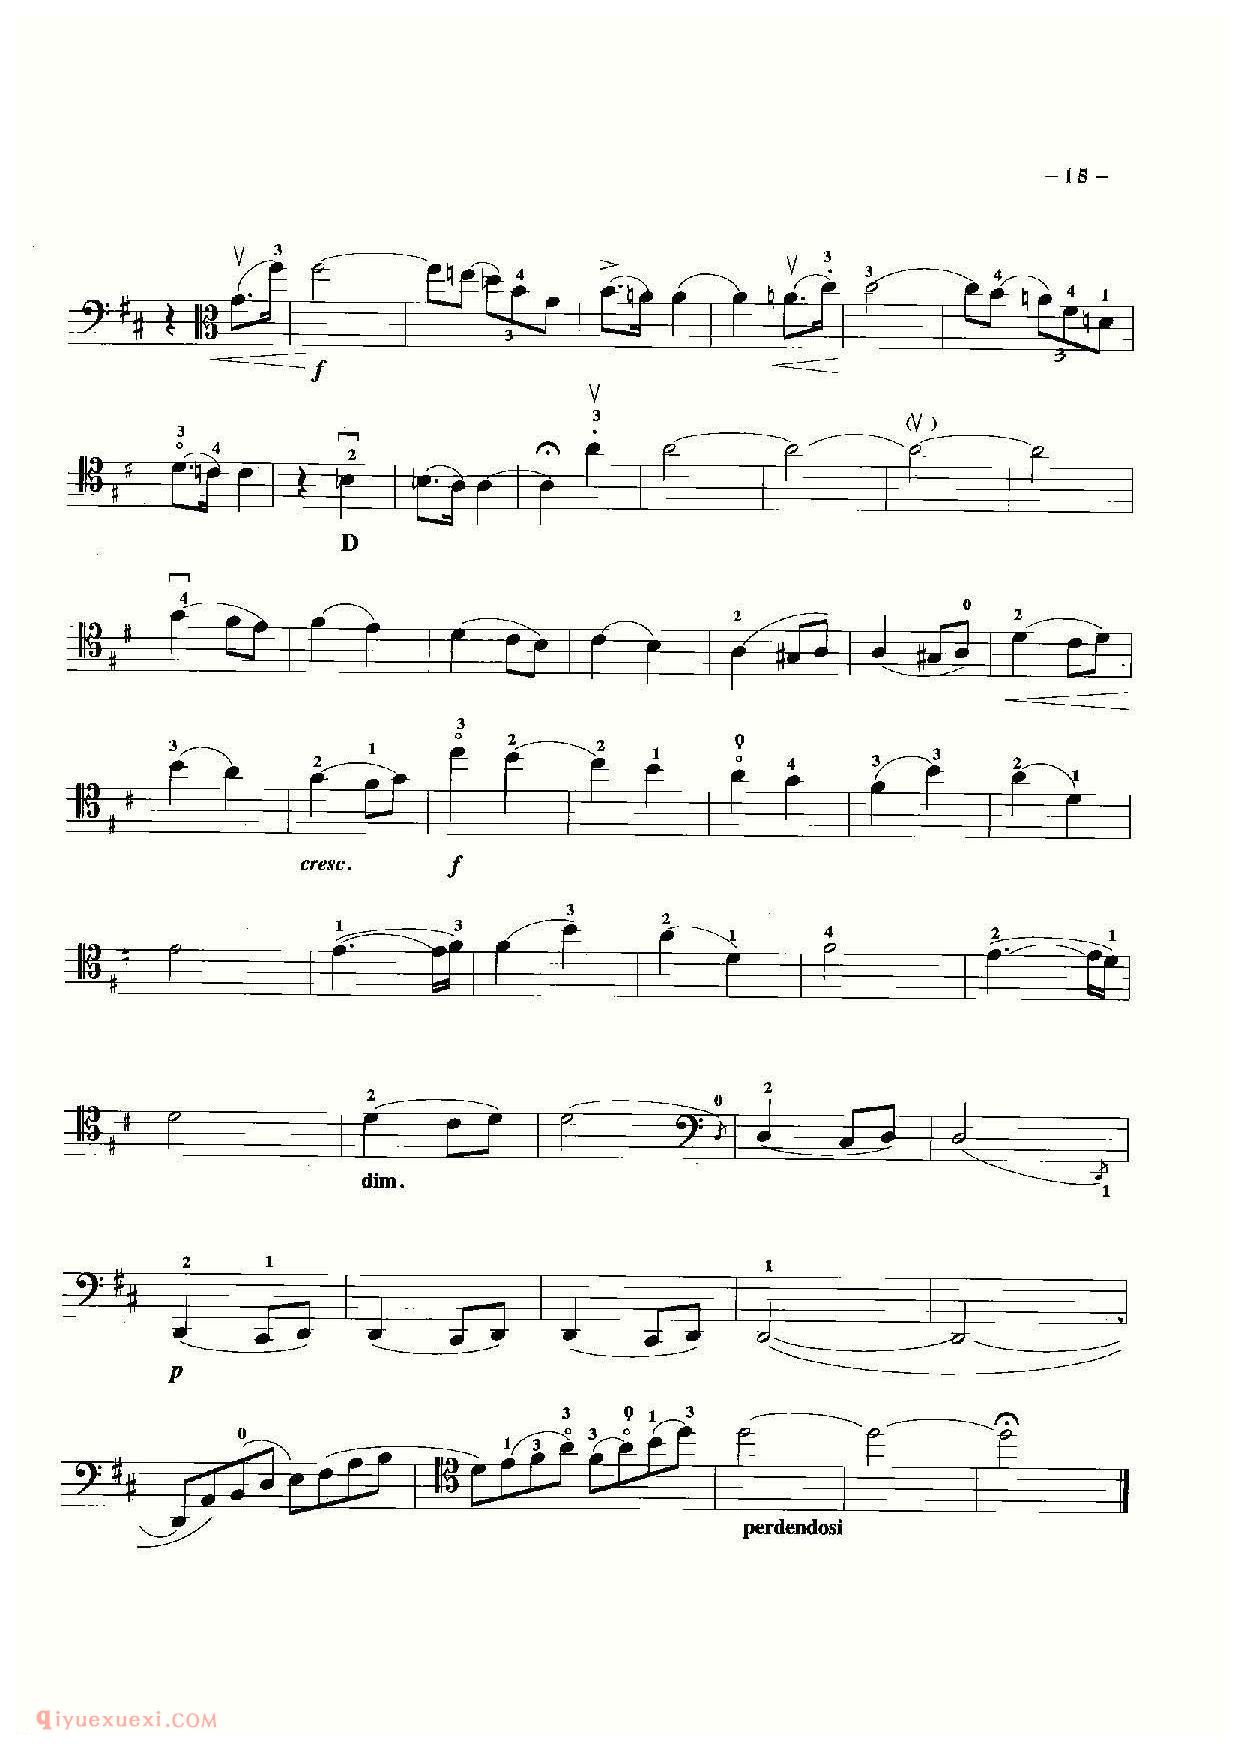 大提琴名曲乐谱《旋律/鲁宾斯坦曲》